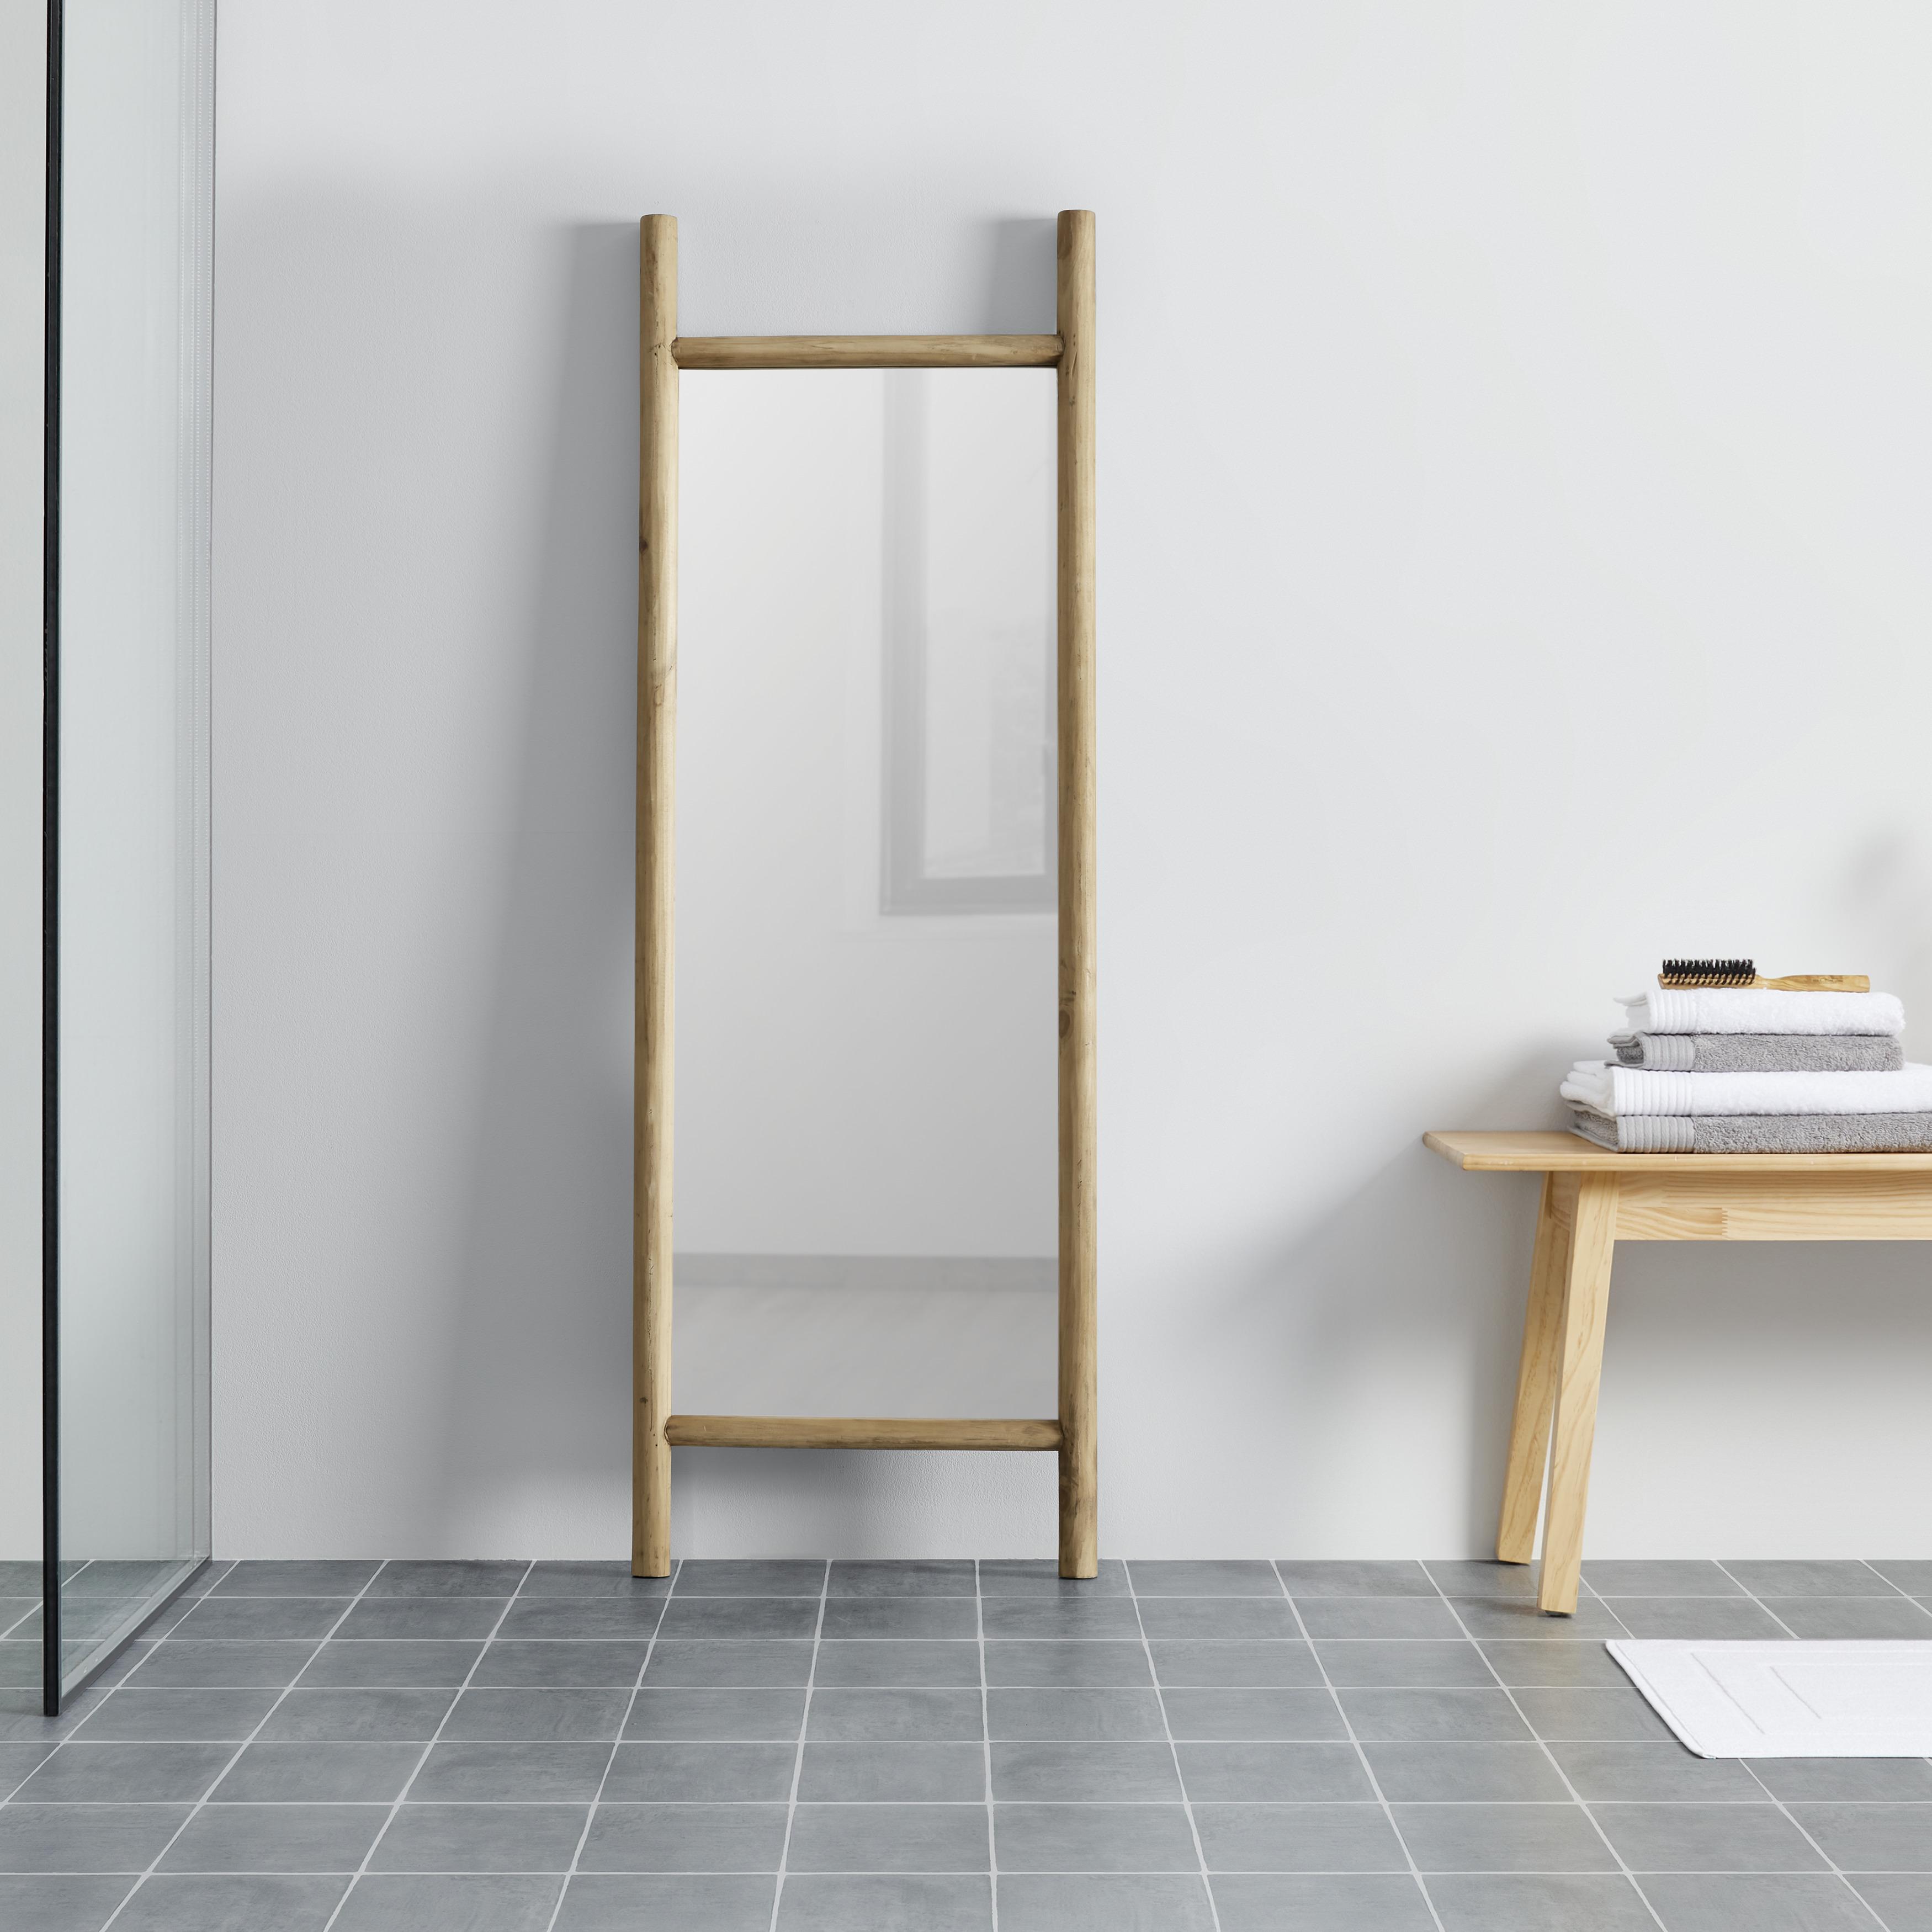 Zrcadlo Masiv Jasmin - přírodní barvy, Moderní, dřevo/sklo (57/170/5cm) - Livetastic